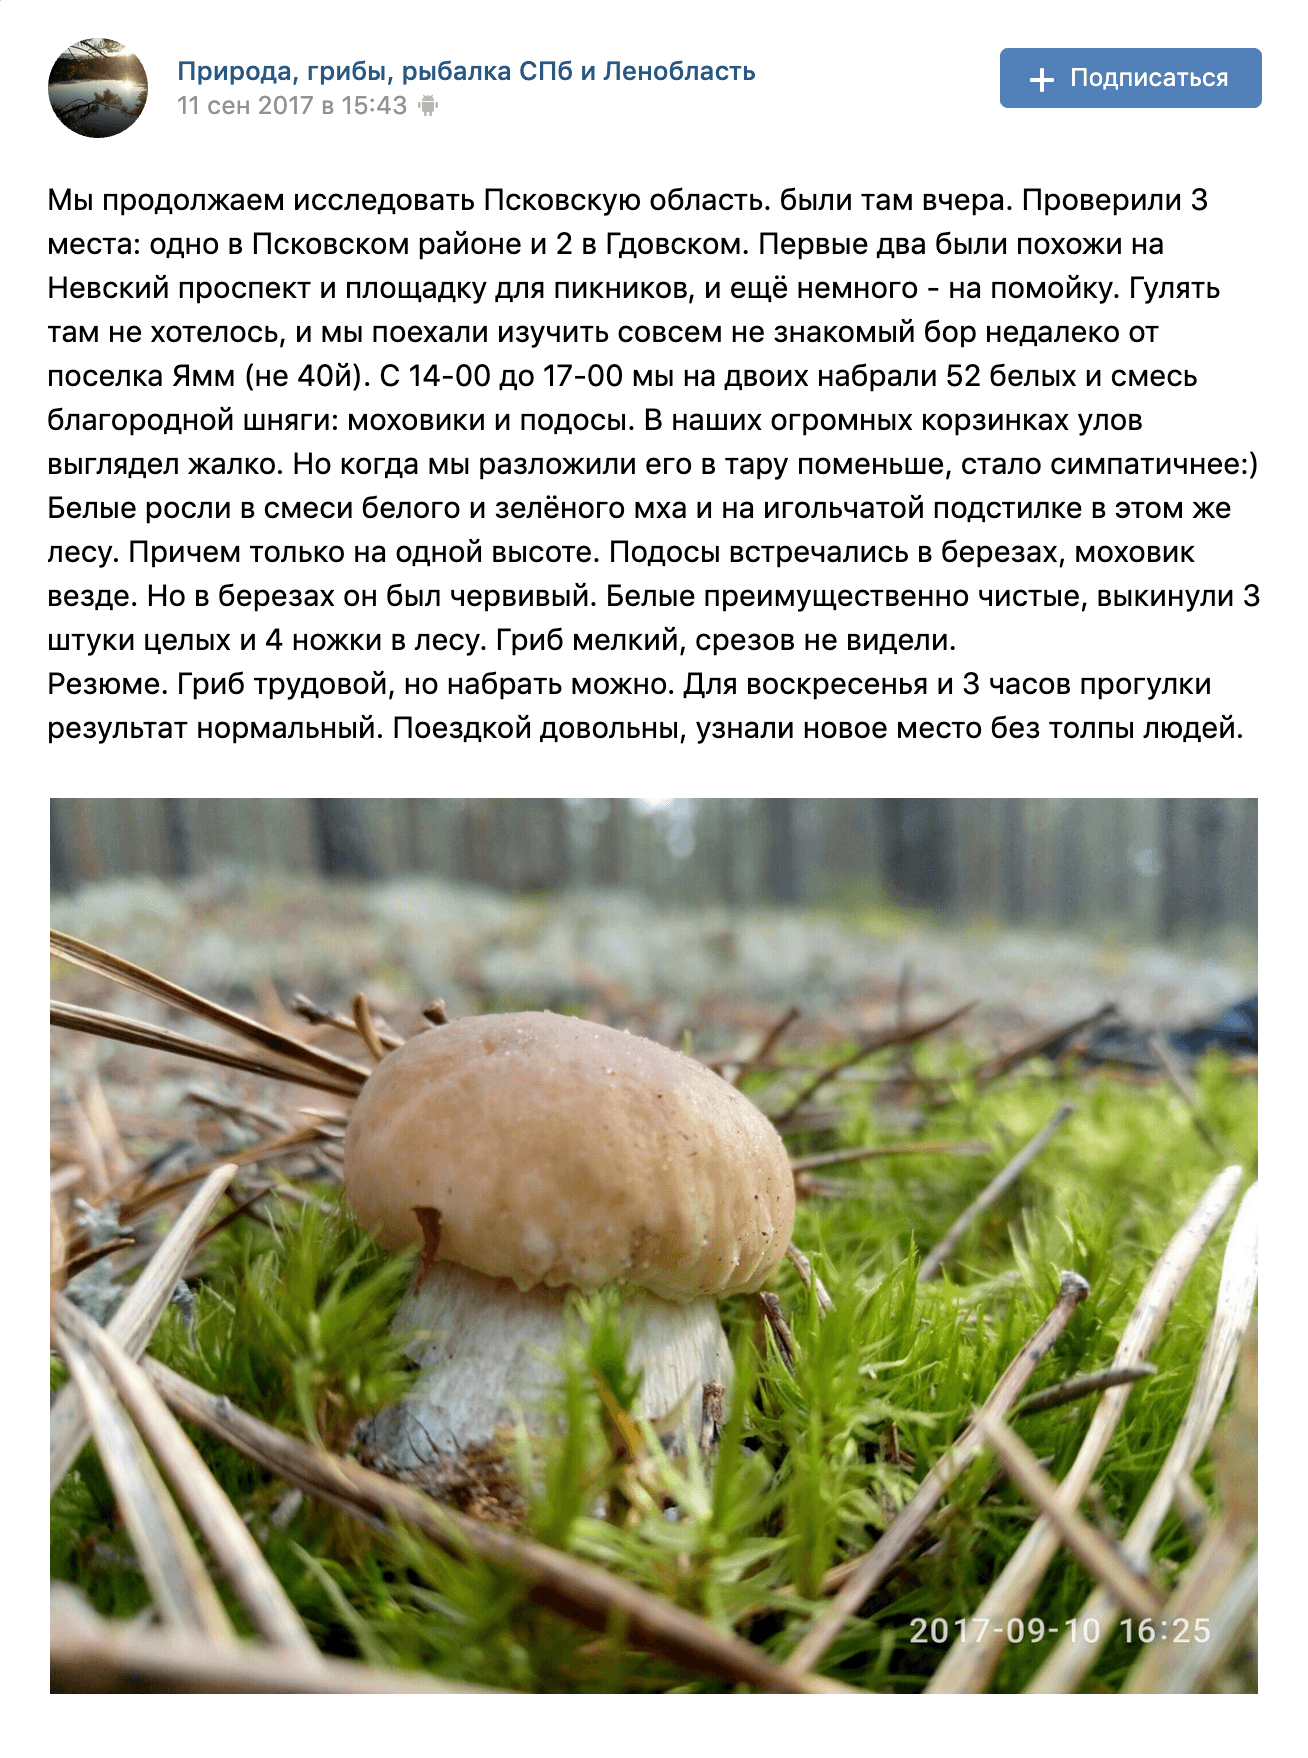 Белый гриб на грядке: реальность или мистификация века?